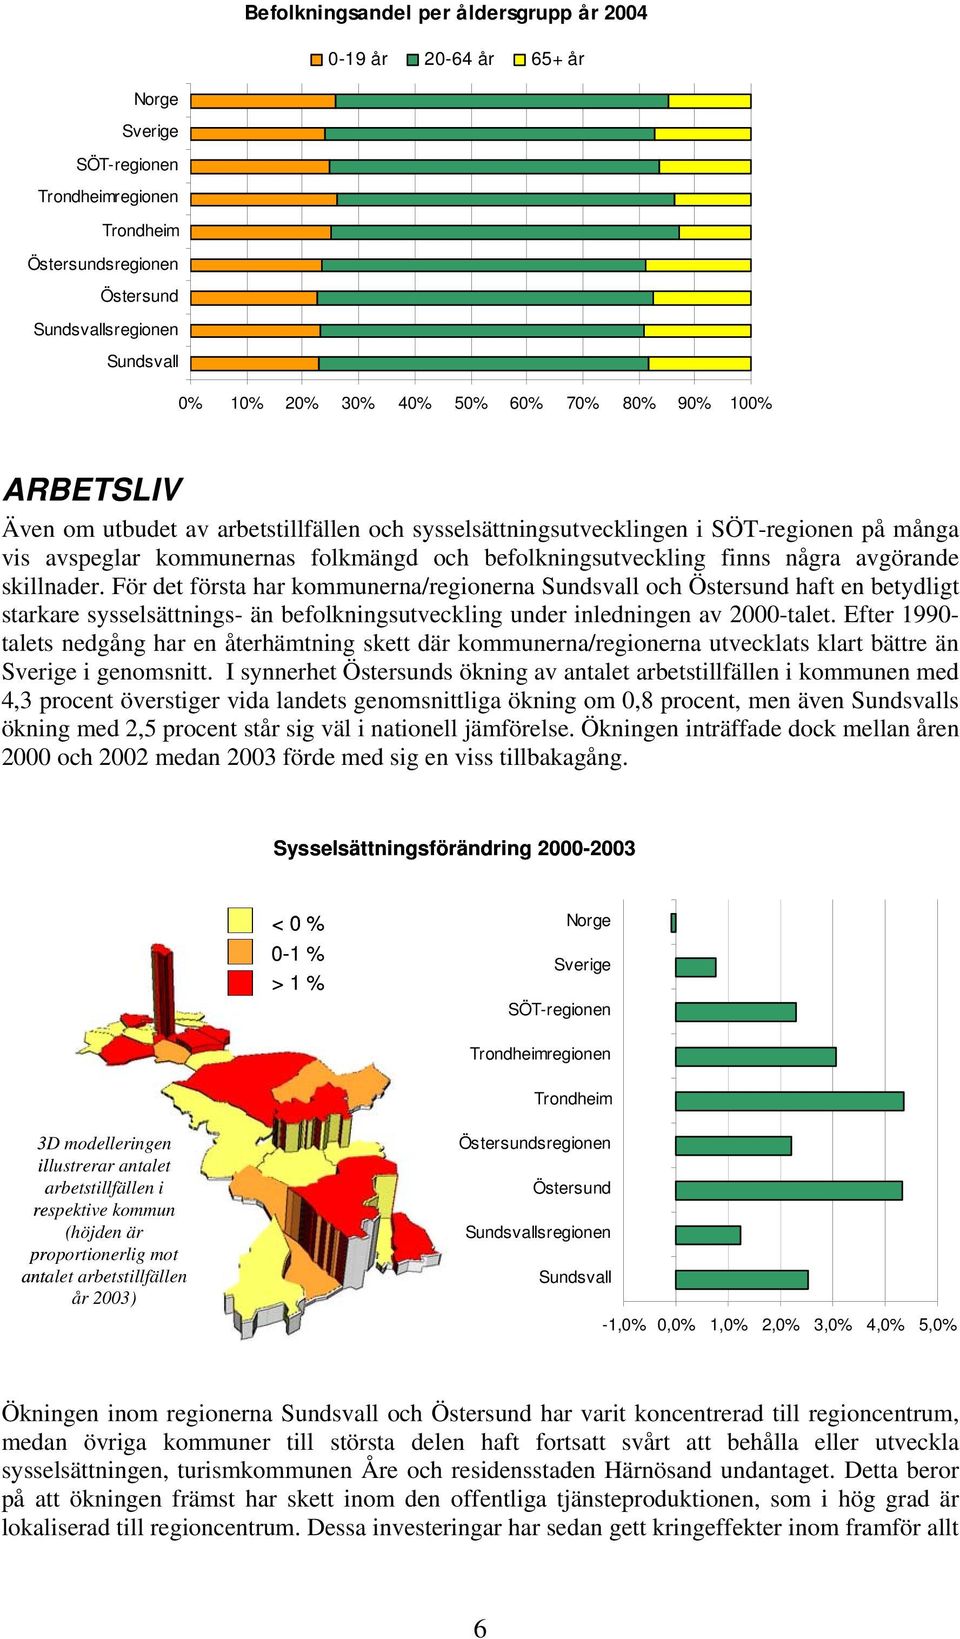 några avgörande skillnader. För det första har kommunerna/regionerna Sundsvall och Östersund haft en betydligt starkare sysselsättnings- än befolkningsutveckling under inledningen av 2000-talet.